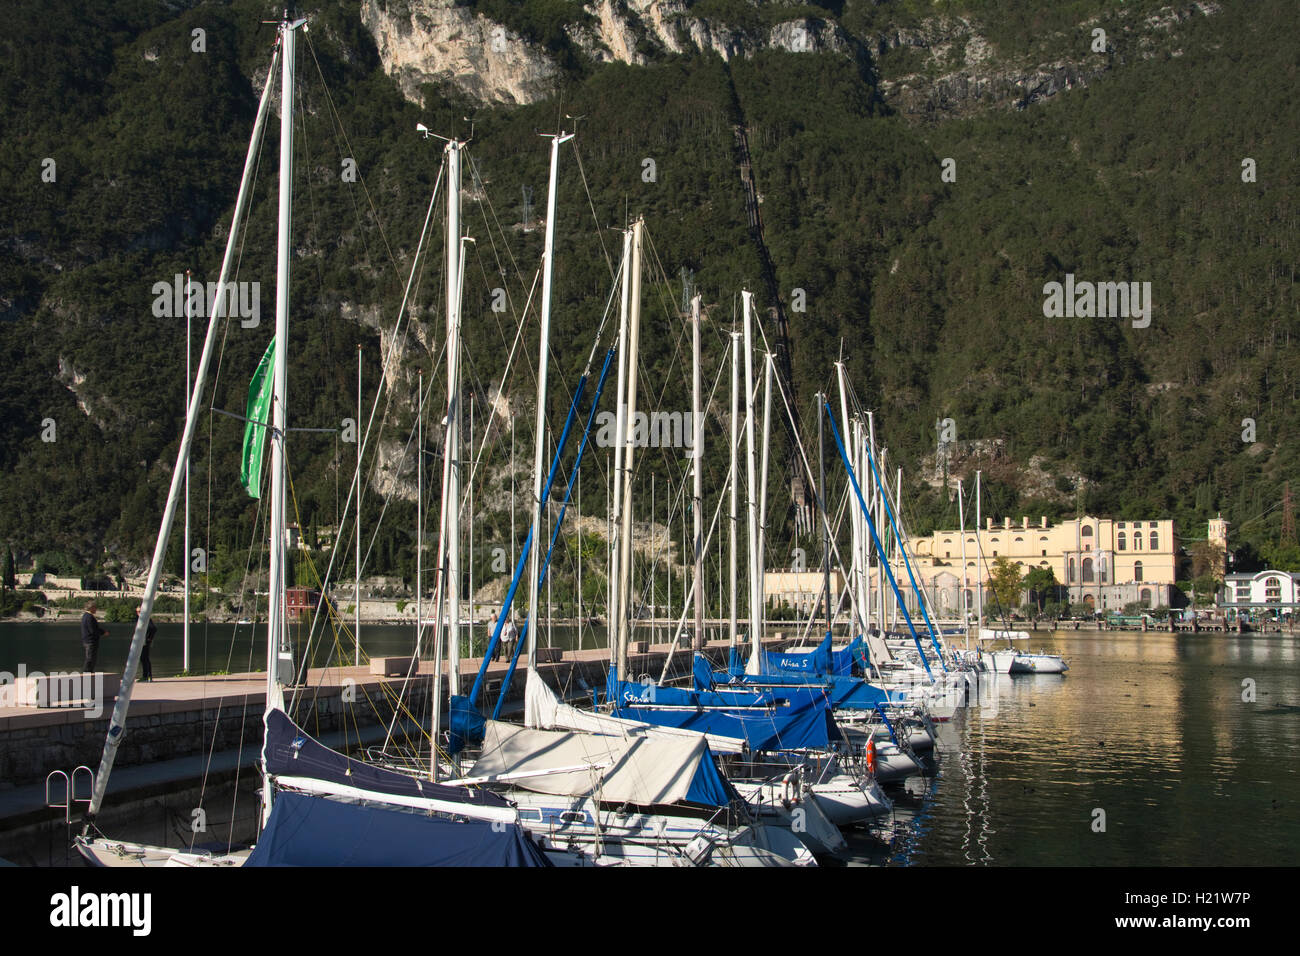 L'Europa, in Italia, in provincia di Trento, il Lago di Garda, Riva del Garda, barche in marina Foto Stock